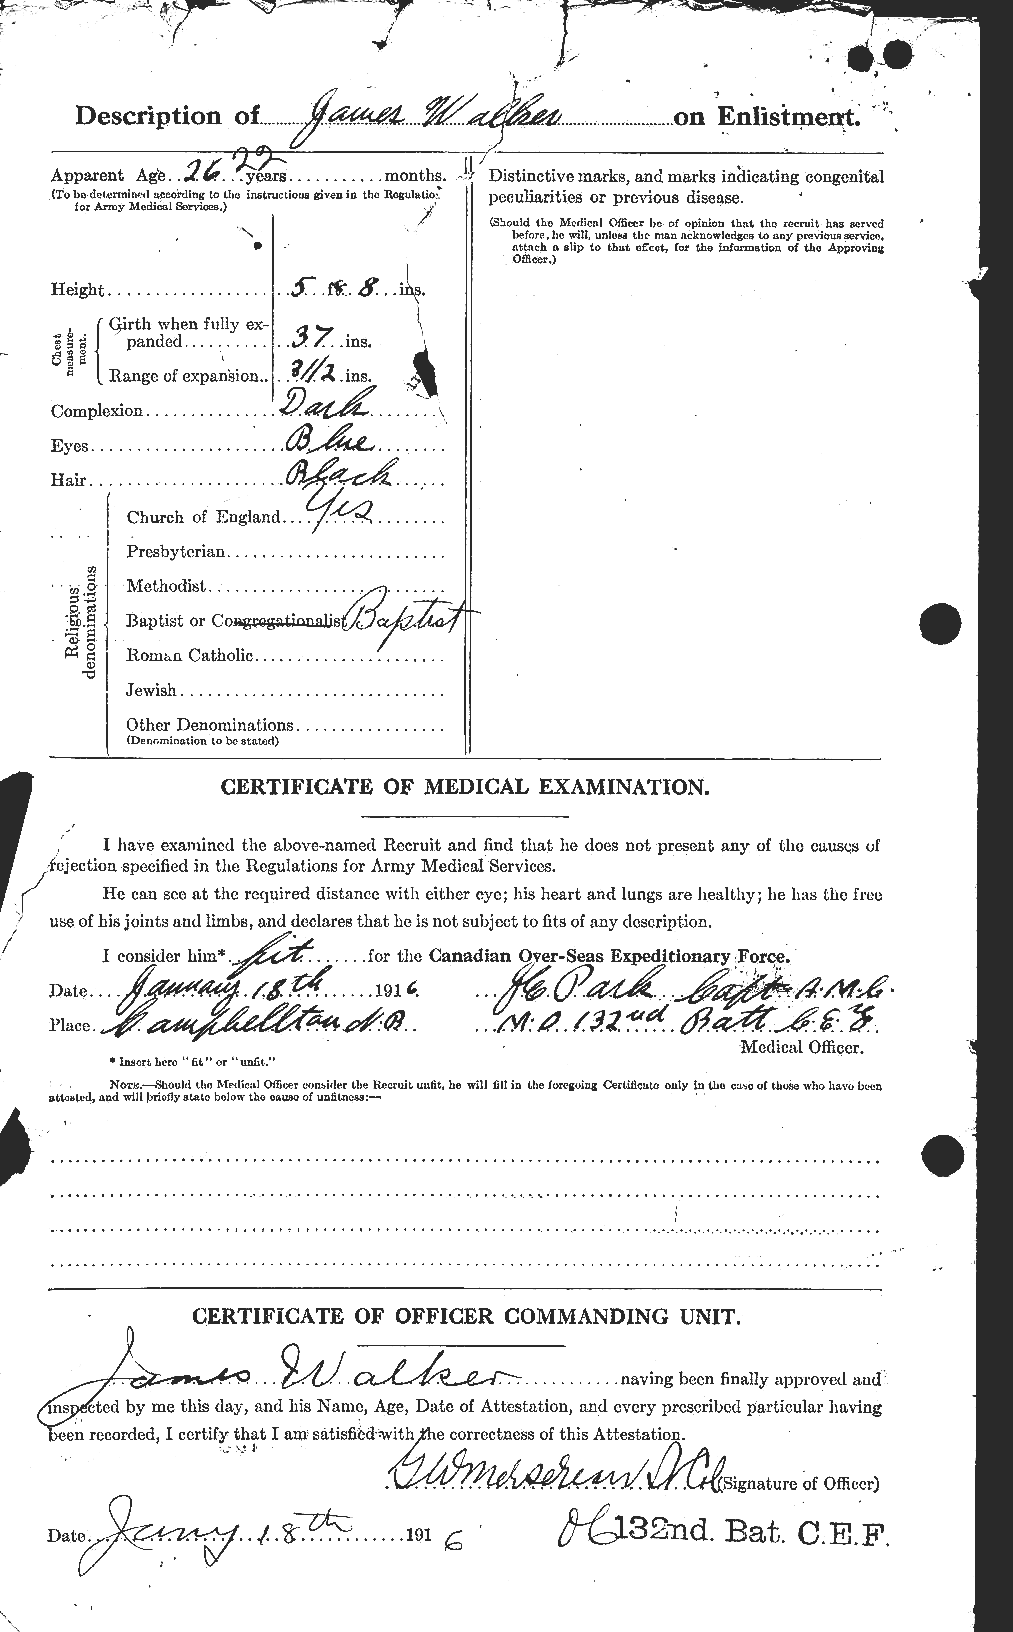 Dossiers du Personnel de la Première Guerre mondiale - CEC 652947b